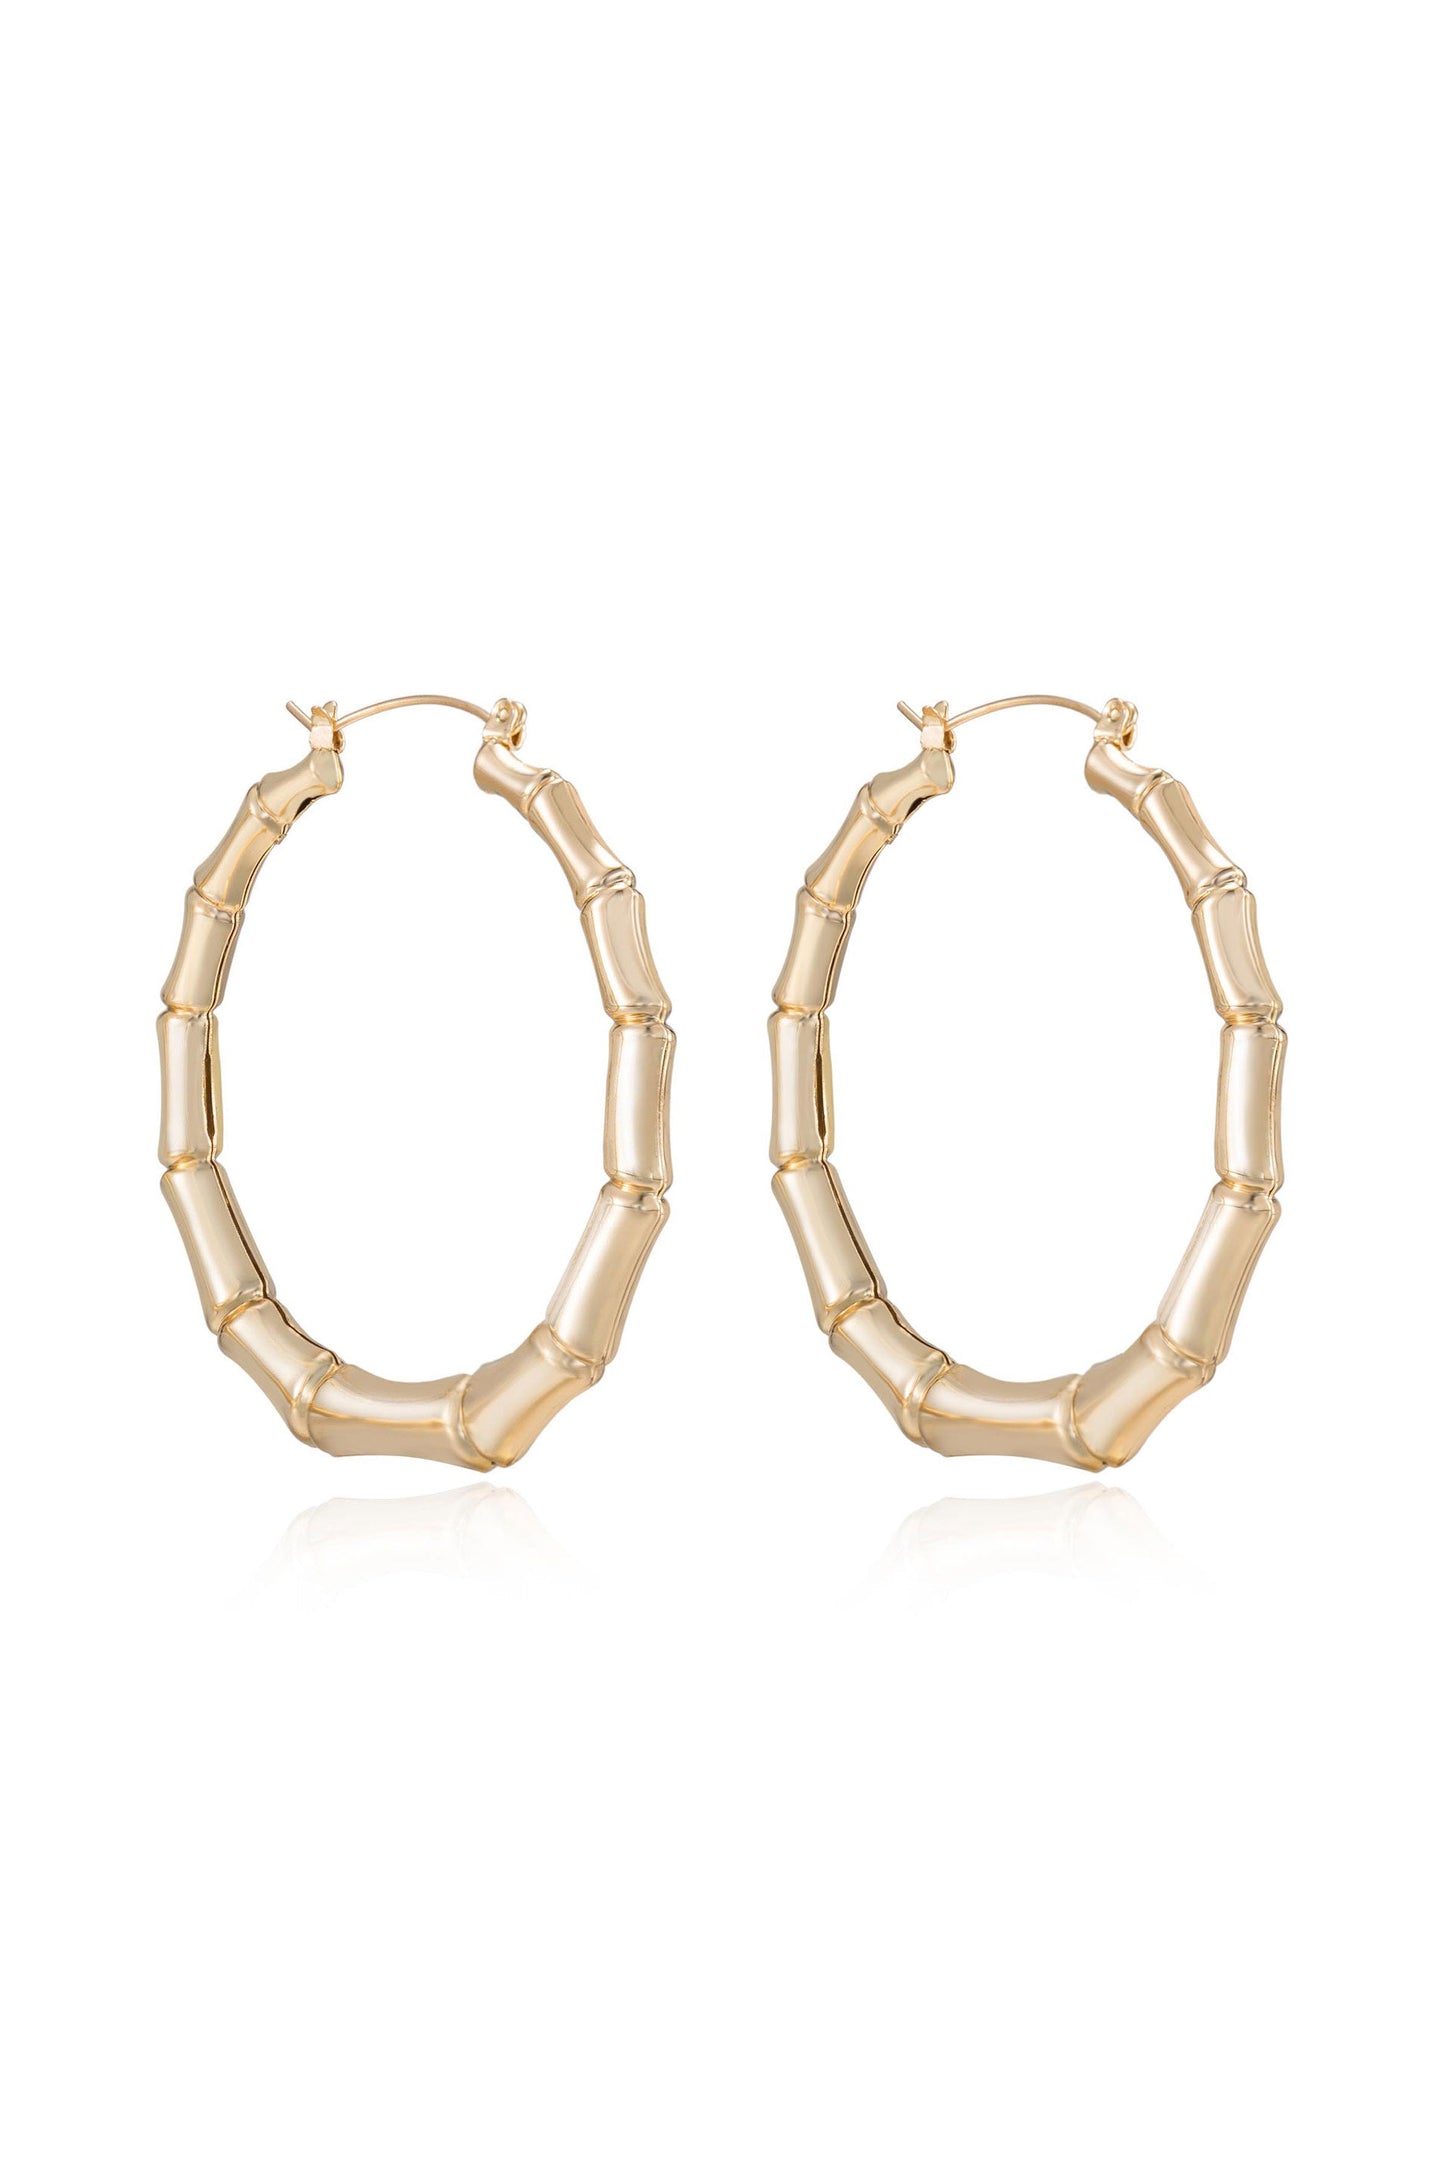 Bamboo Hoop Earrings - Premium Earrings from Ettika - Just $45! Shop now at Tooksie